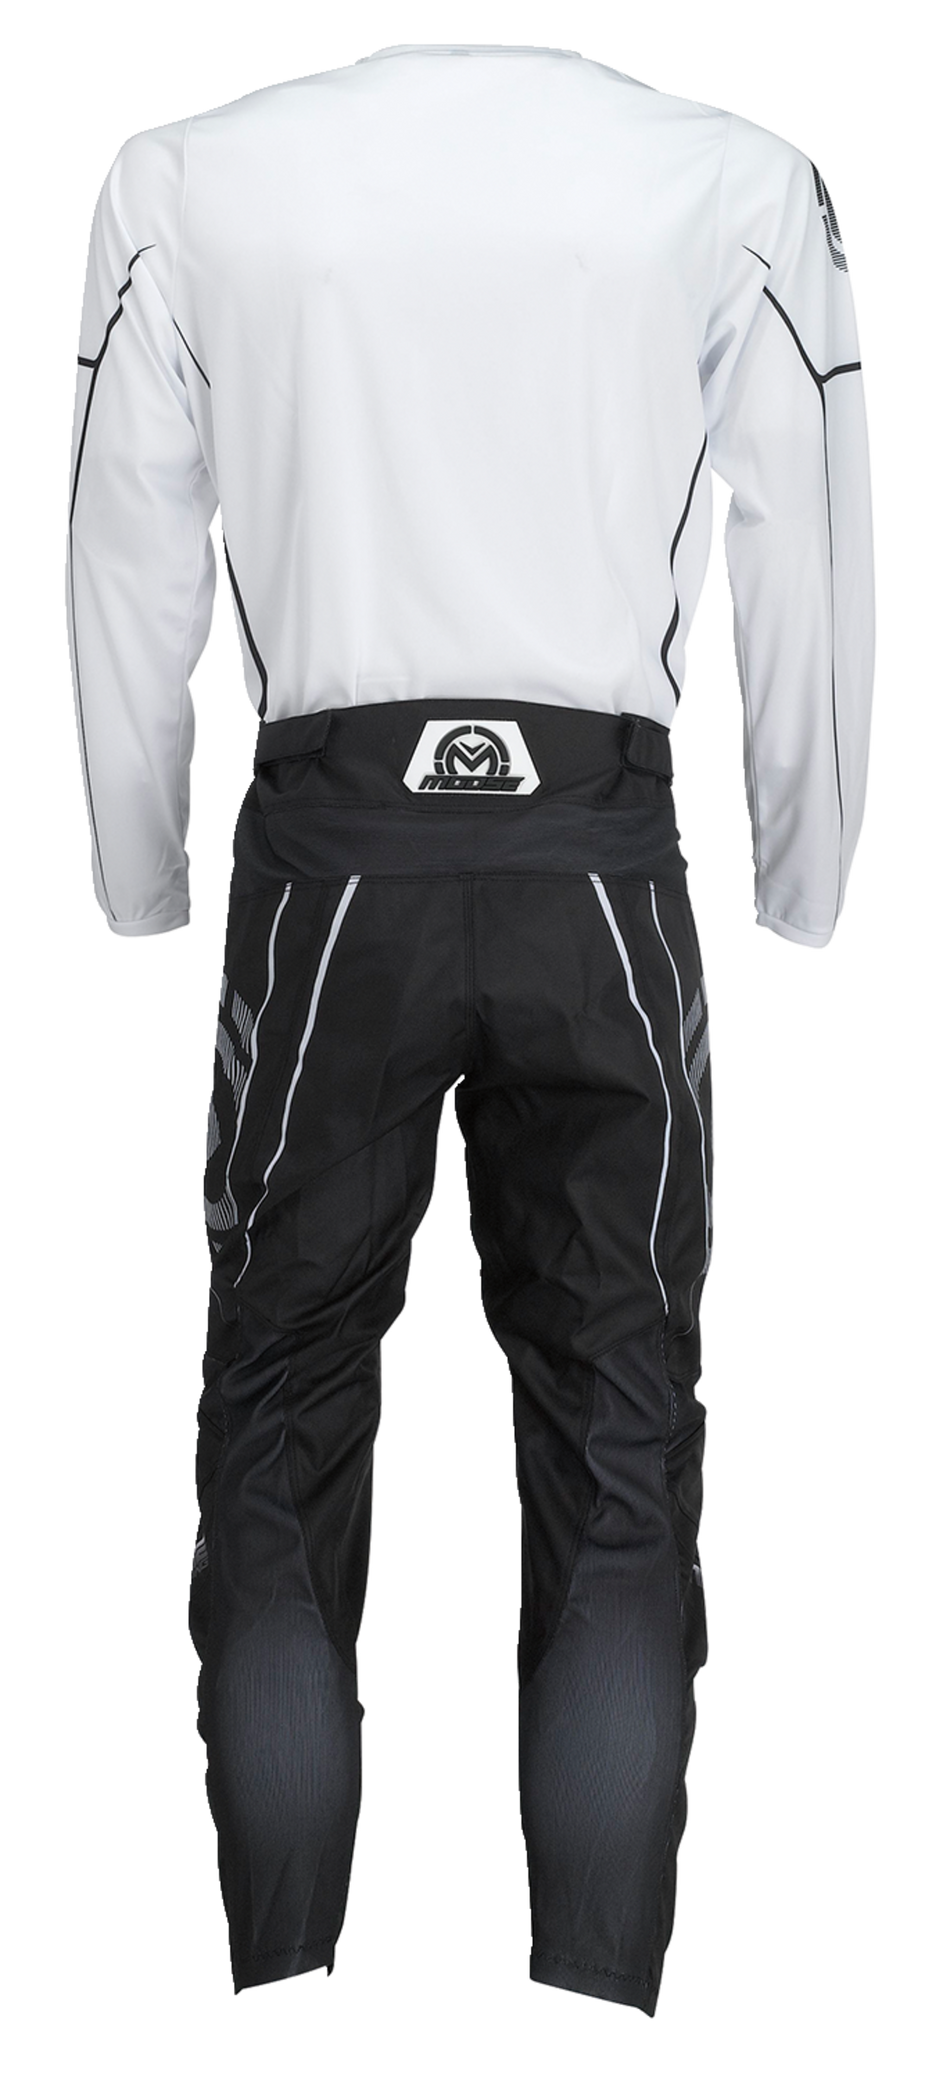 MOOSE RACING Qualifier® Jersey - Black/White - 5XL 2910-7195